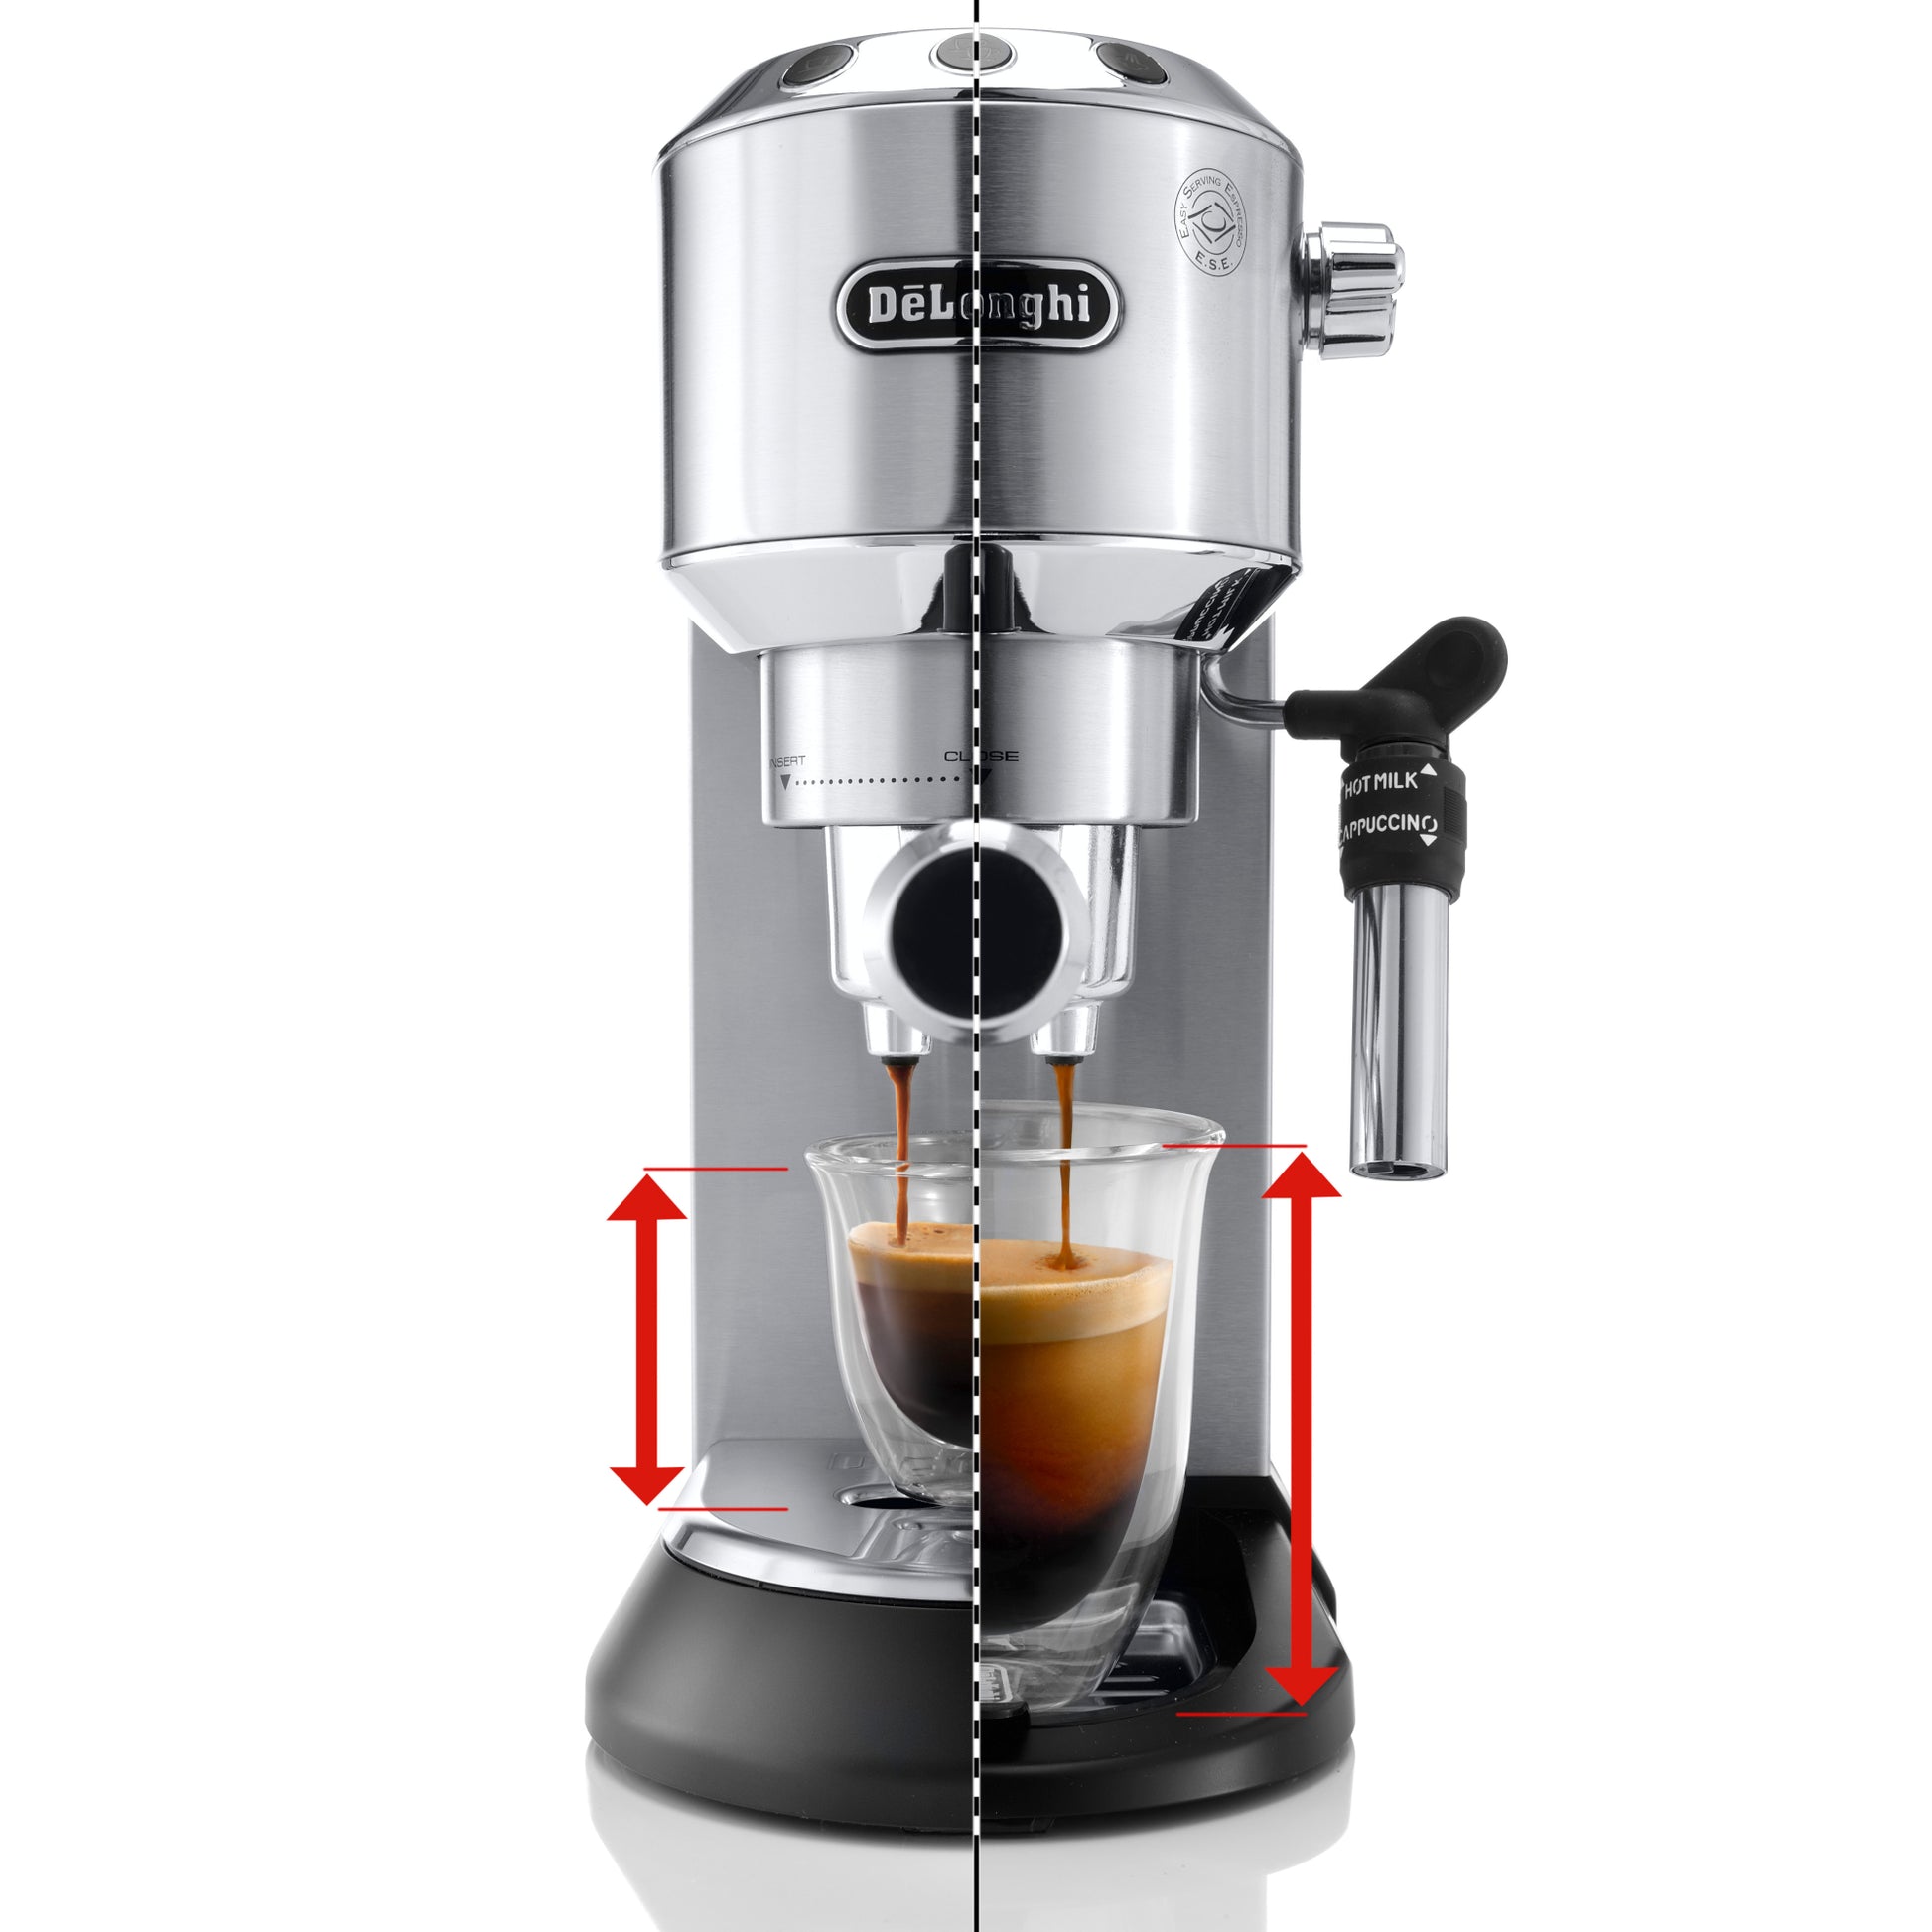 Dedica DeLuxe Manual Espresso Machine